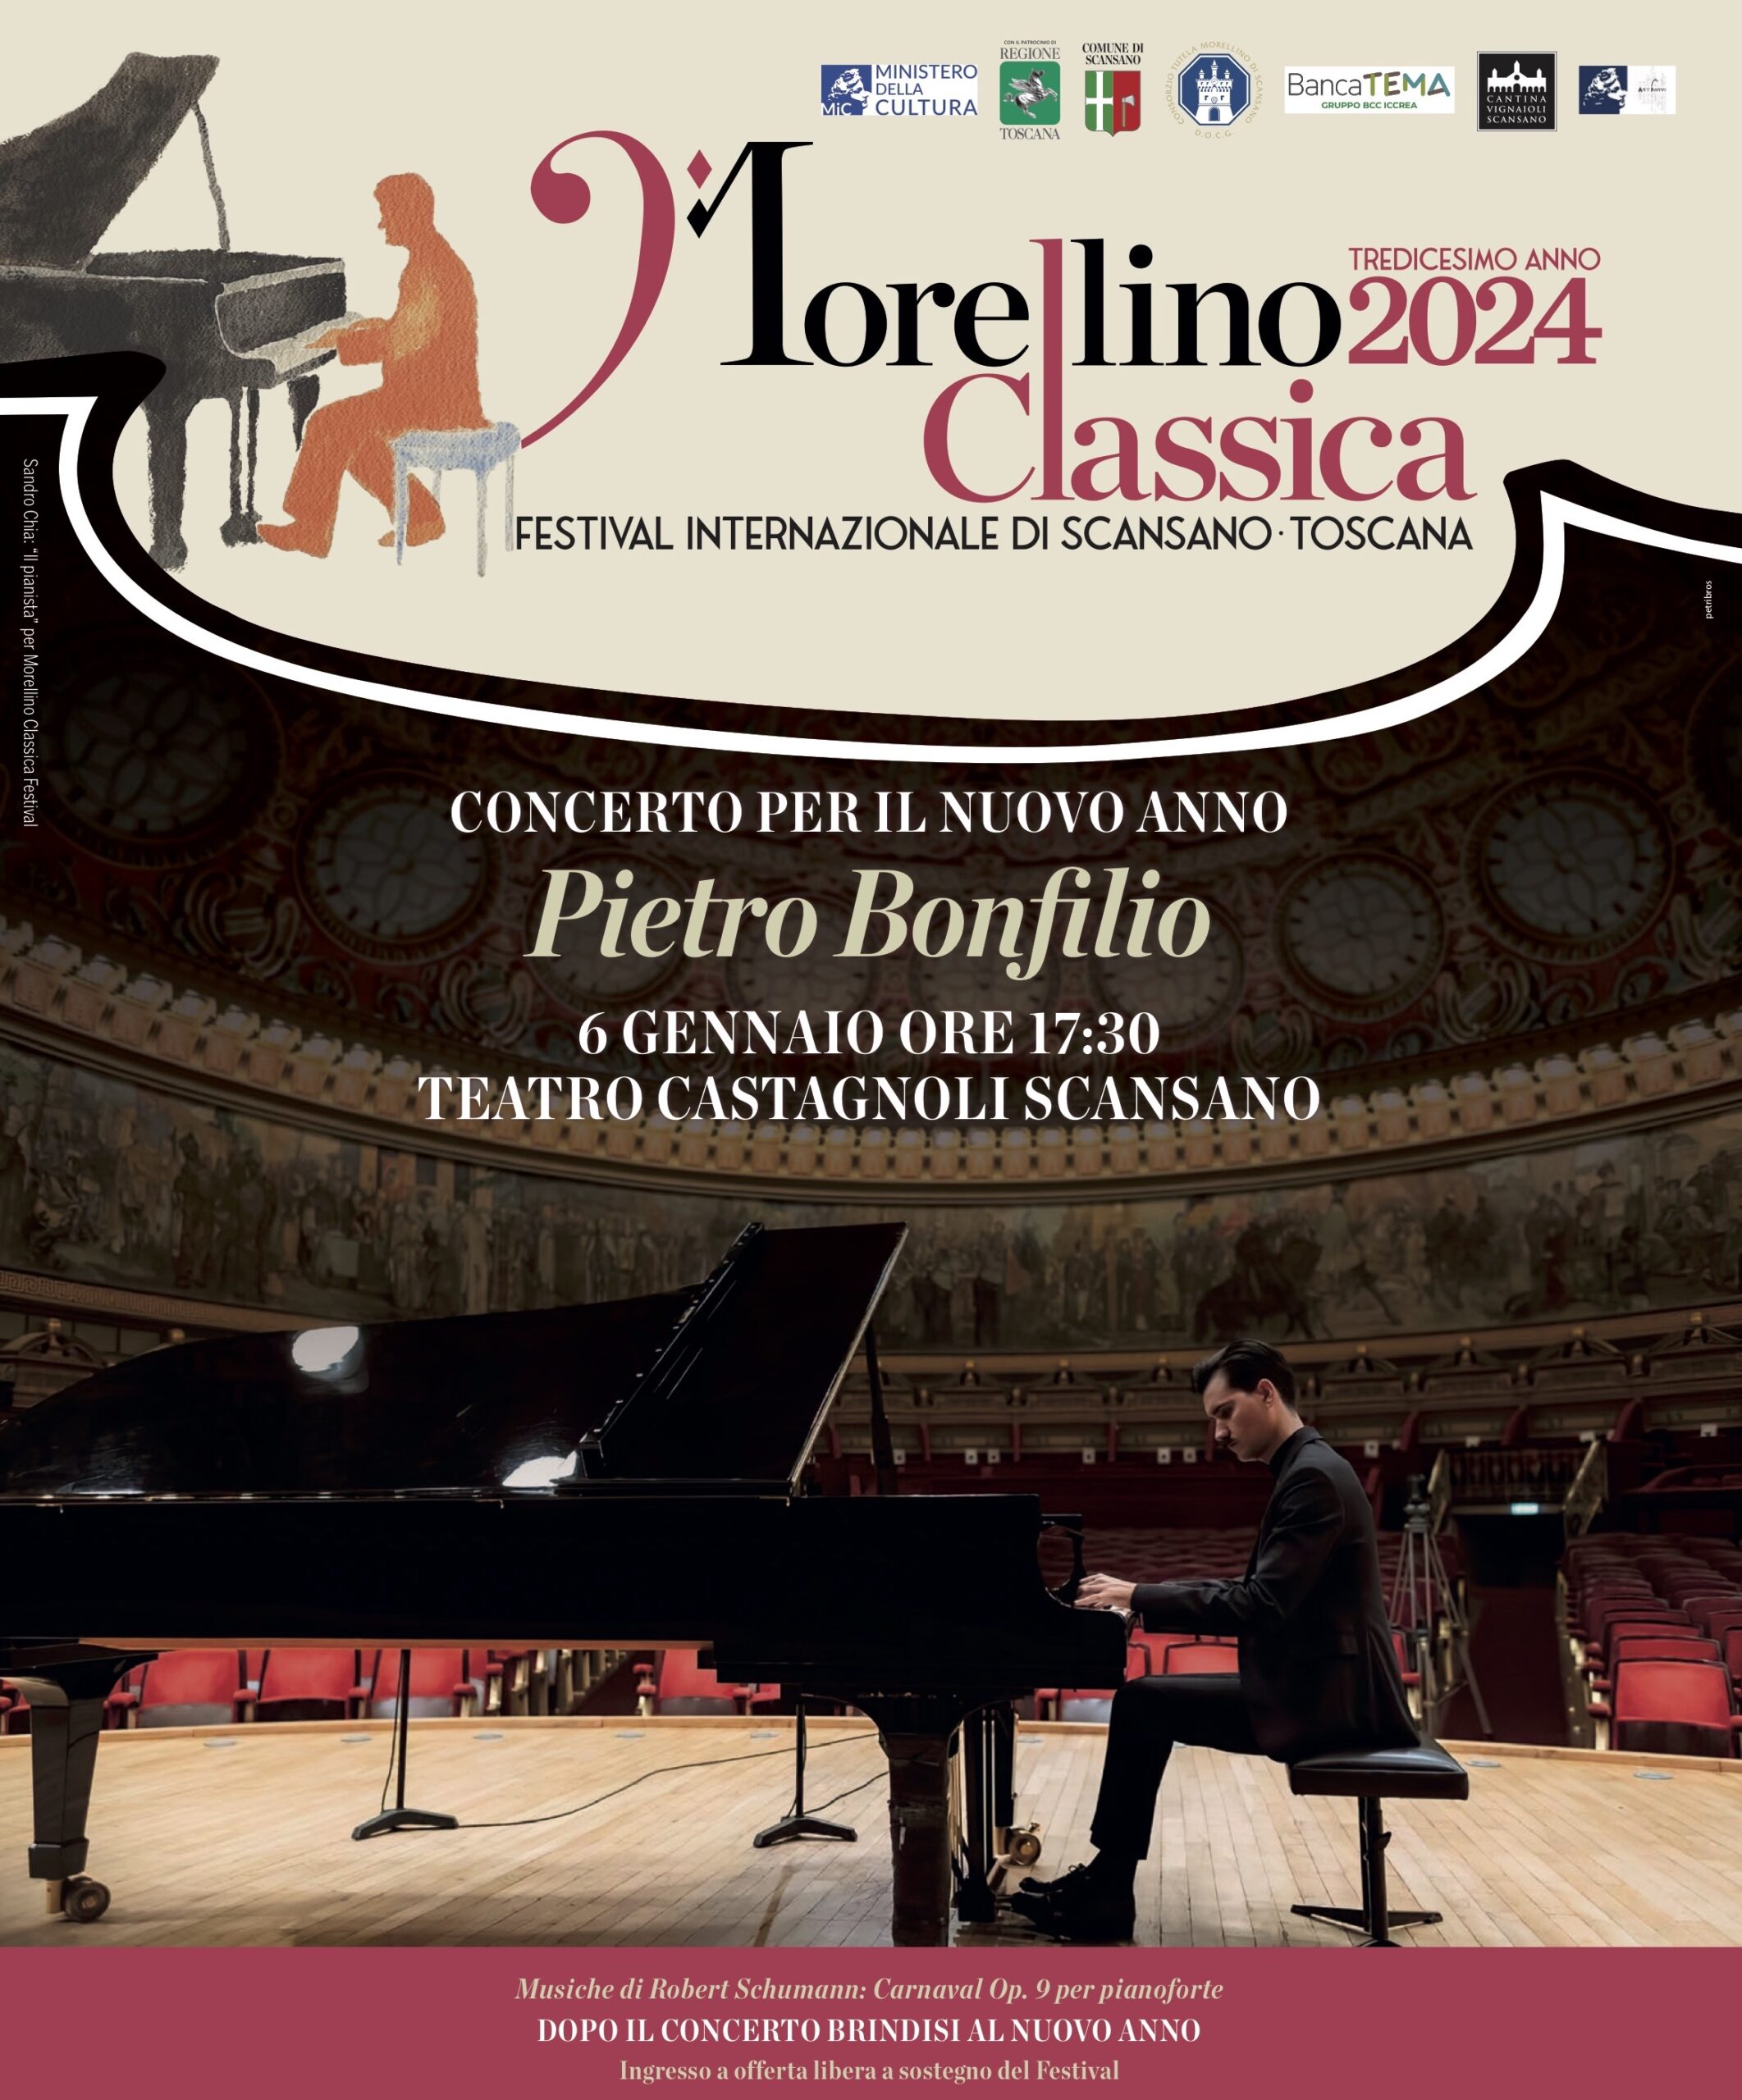 Concerto per il Nuovo Anno - Pietro Bonfilio 6 Gennaio Castagnoli